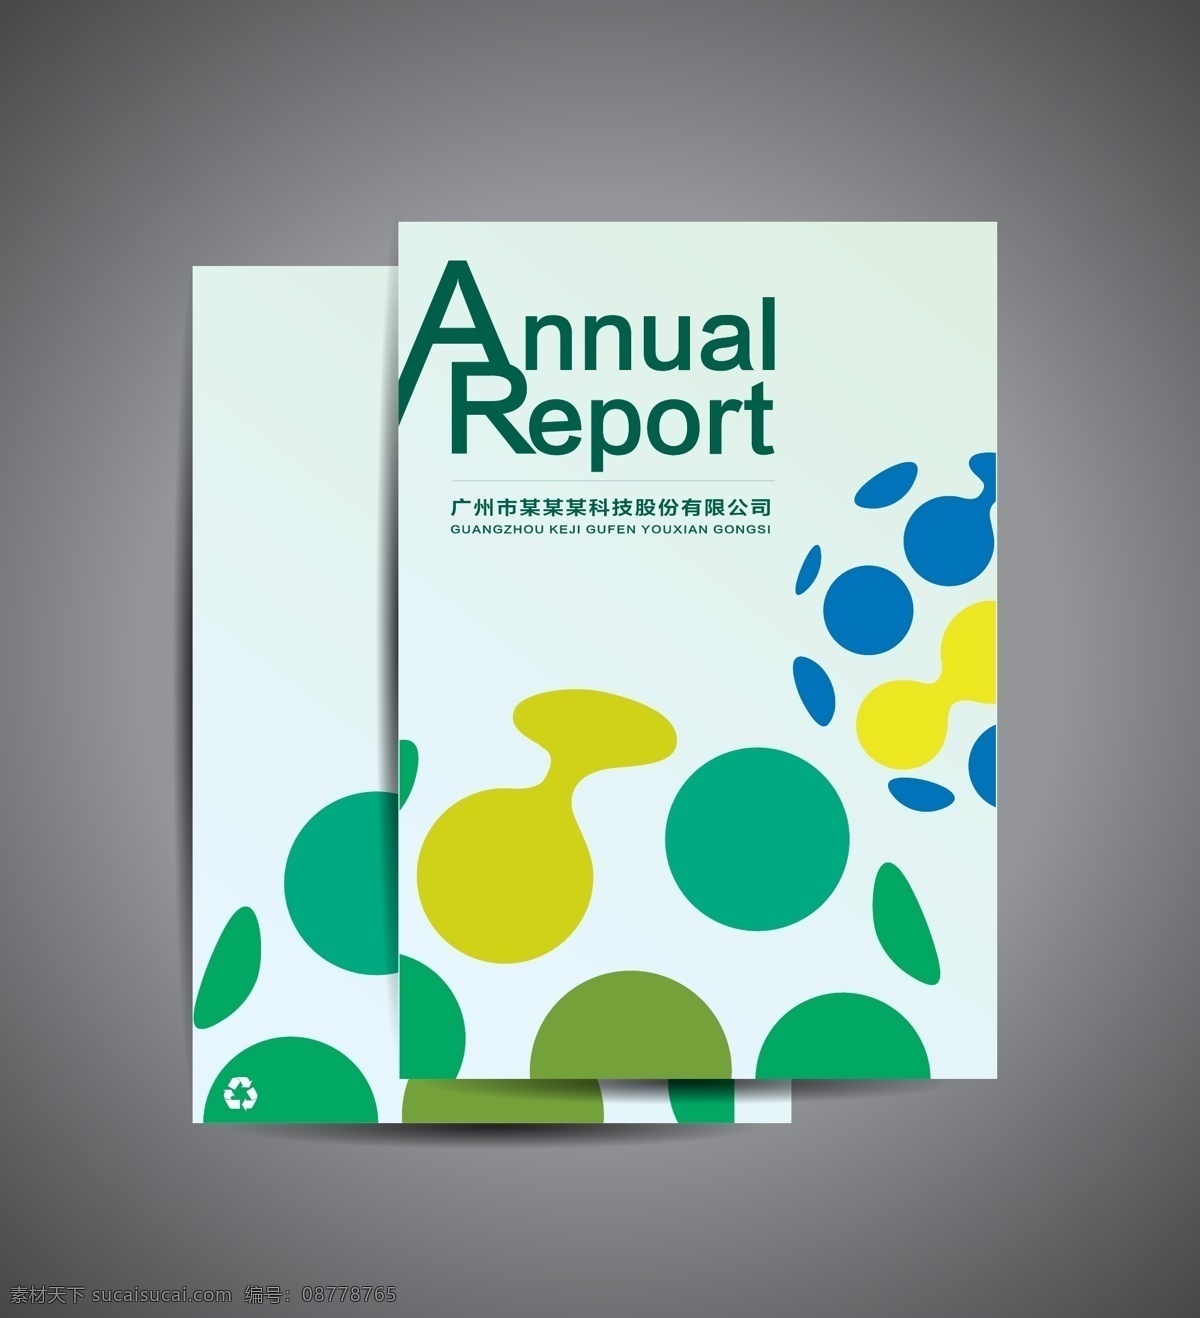 封面 封面模板 绿色 年报 annual report 商务 公司画册 画册封面 排版 编排 画册设计 彩色 封面设计 样本封面